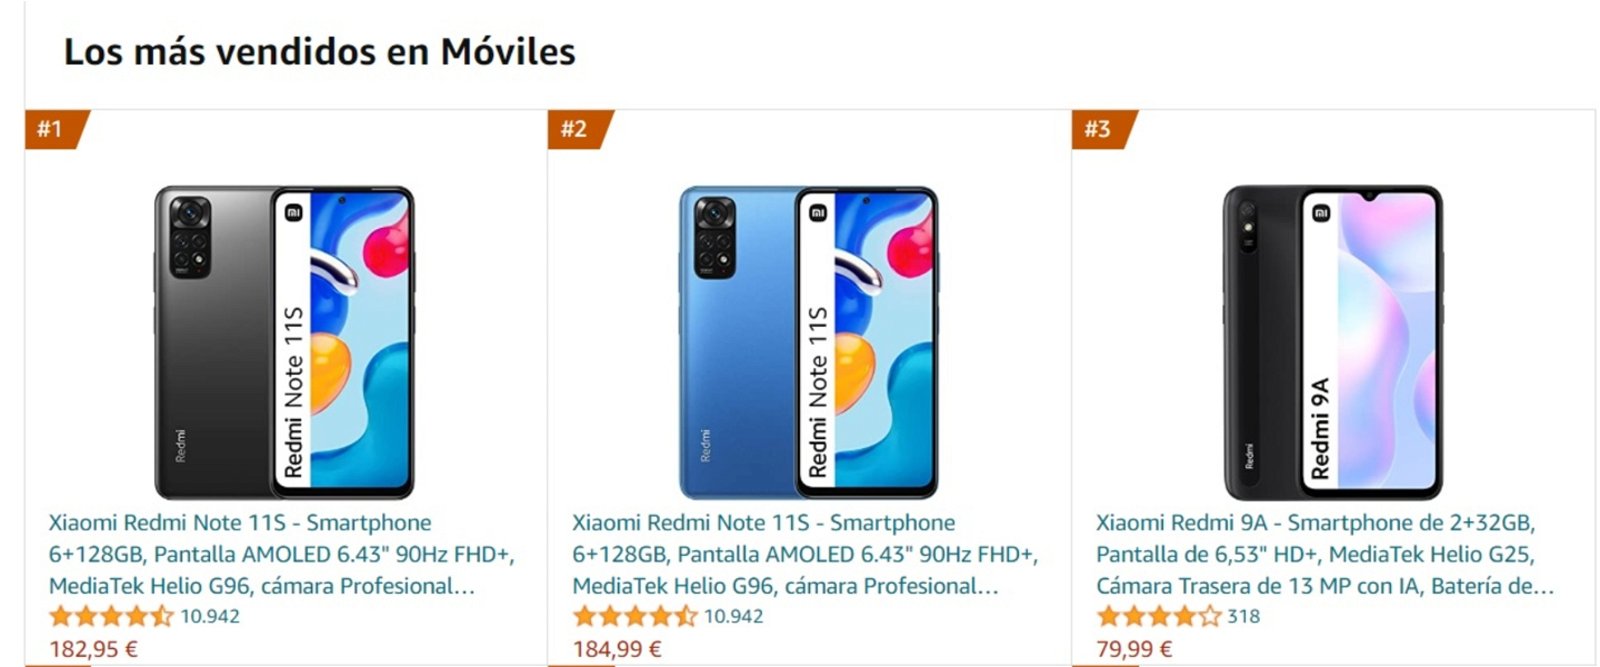 Los 5 móviles baratos más vendidos de : dominio total de Xiaomi